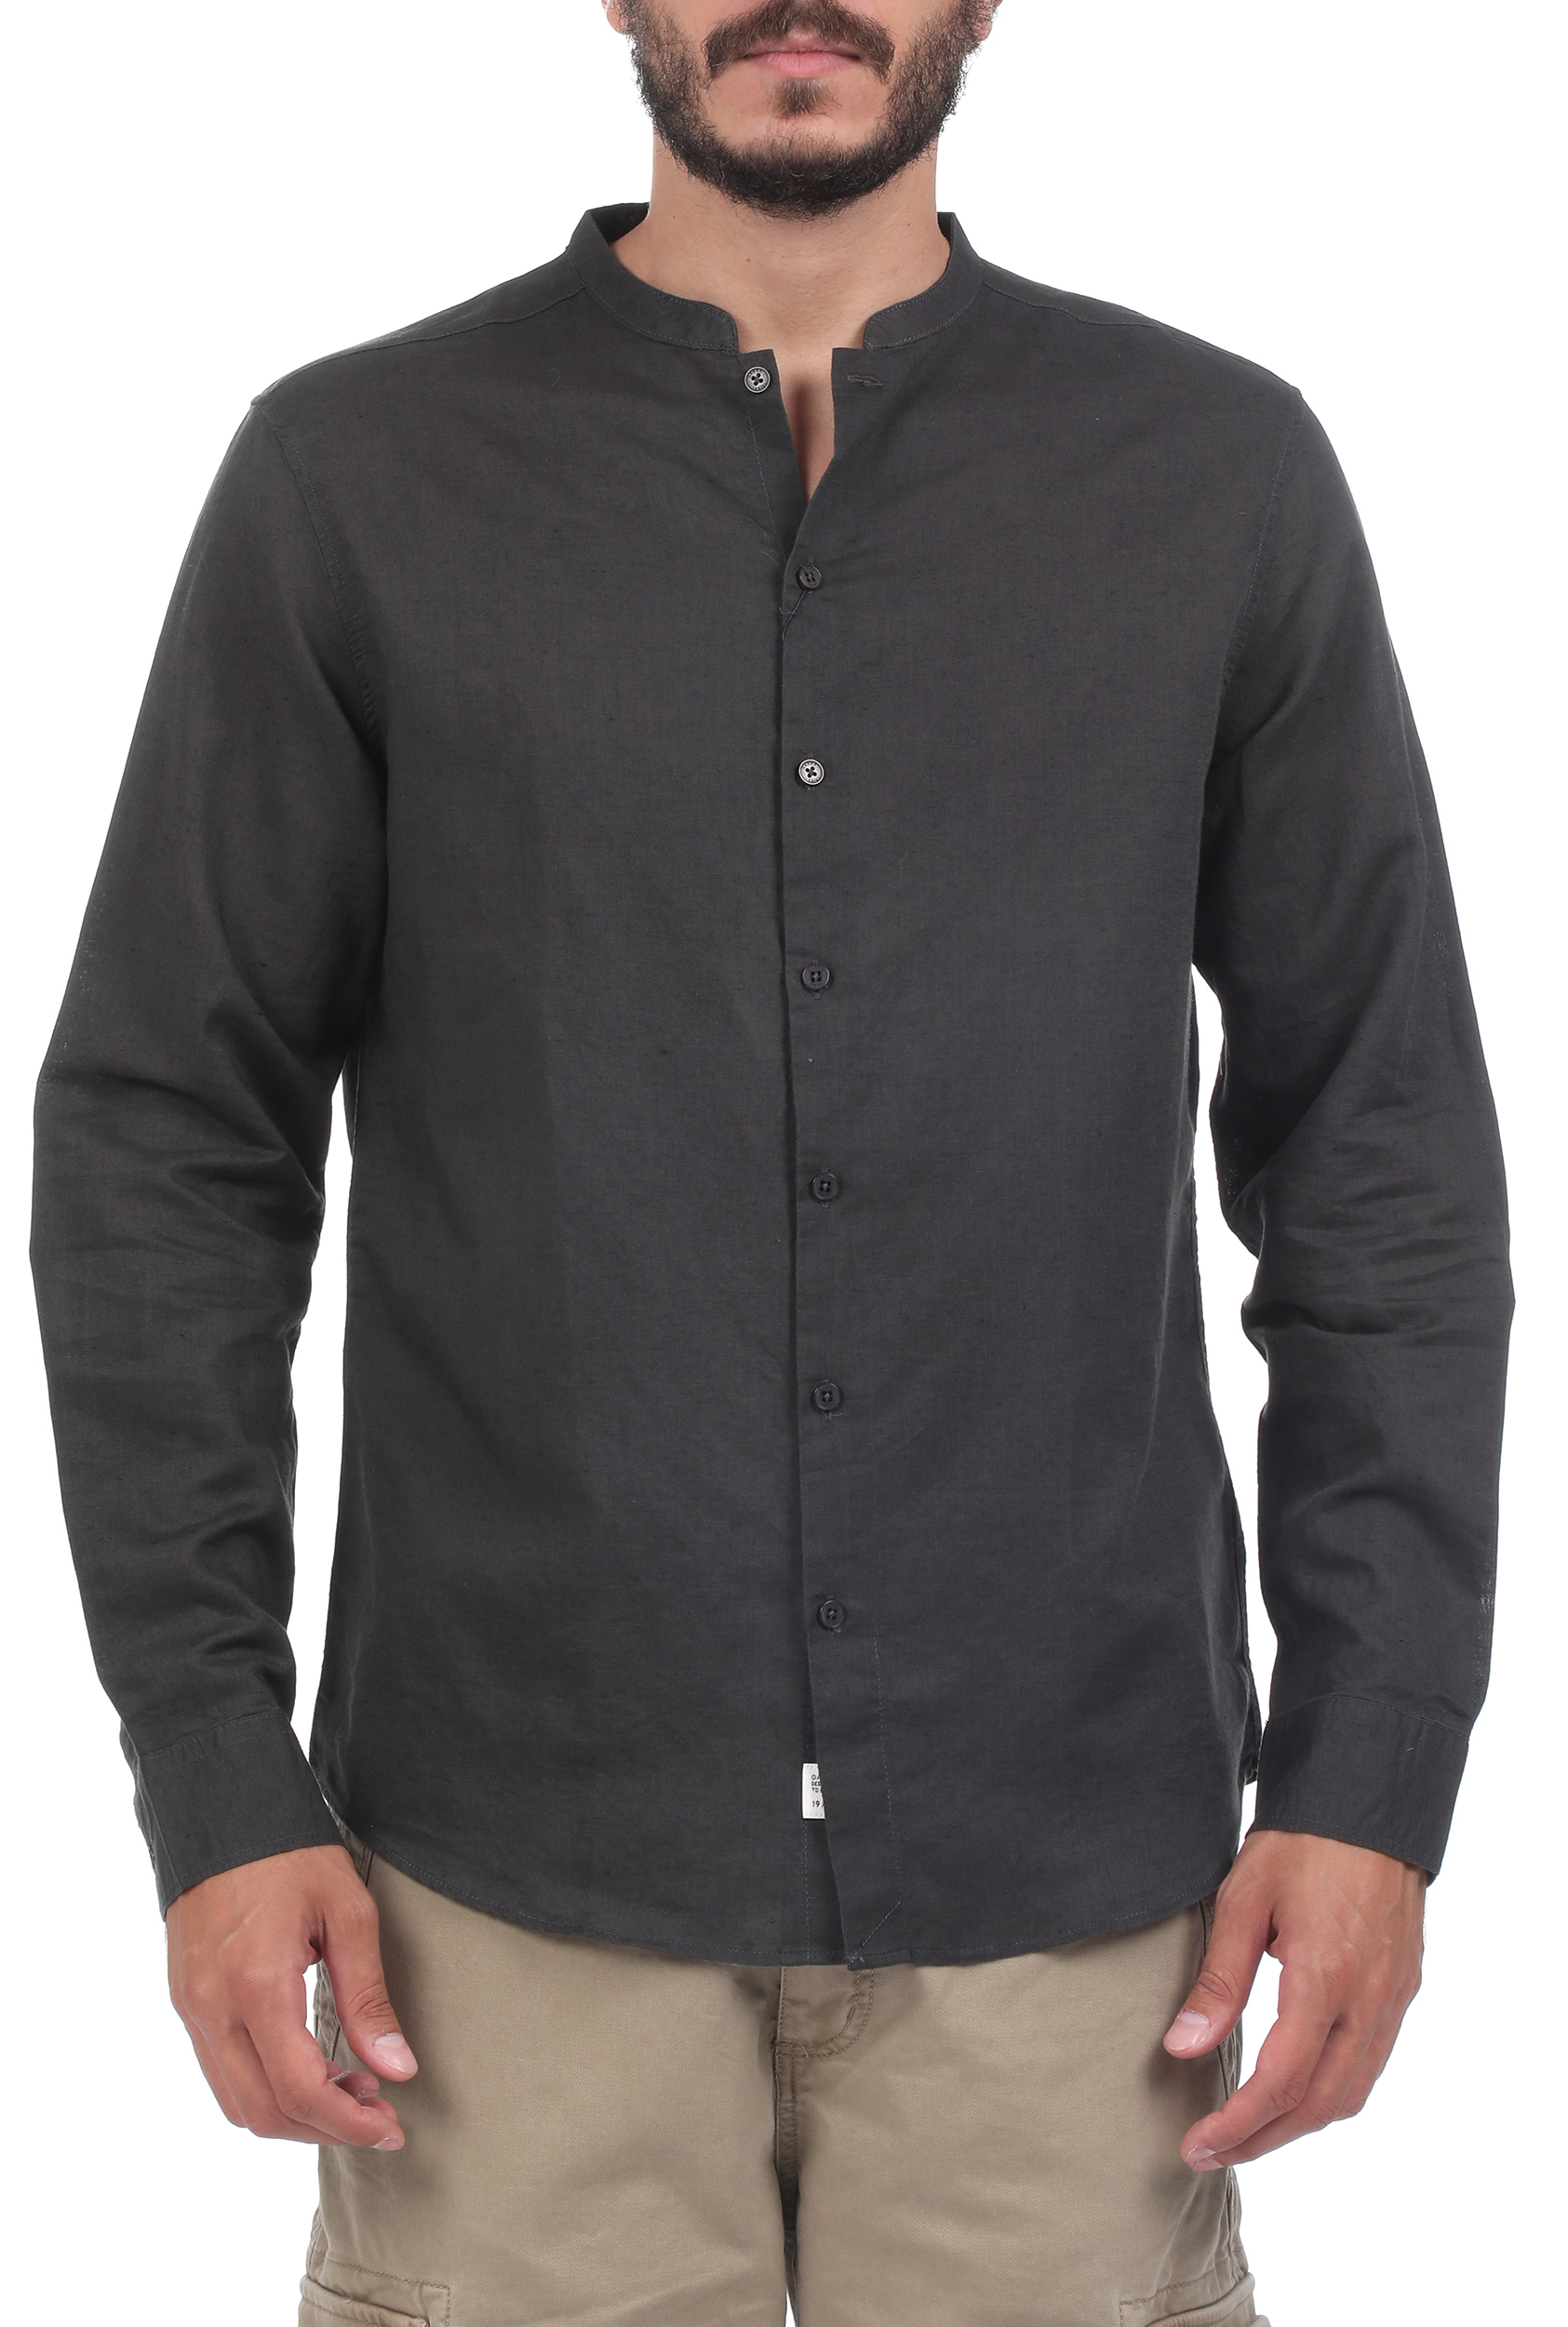 Ανδρικά/Ρούχα/Πουκάμισα/Μακρυμάνικα GABBA - Ανδρικό πουκάμισο GABBA Hobart Linen μαύρο